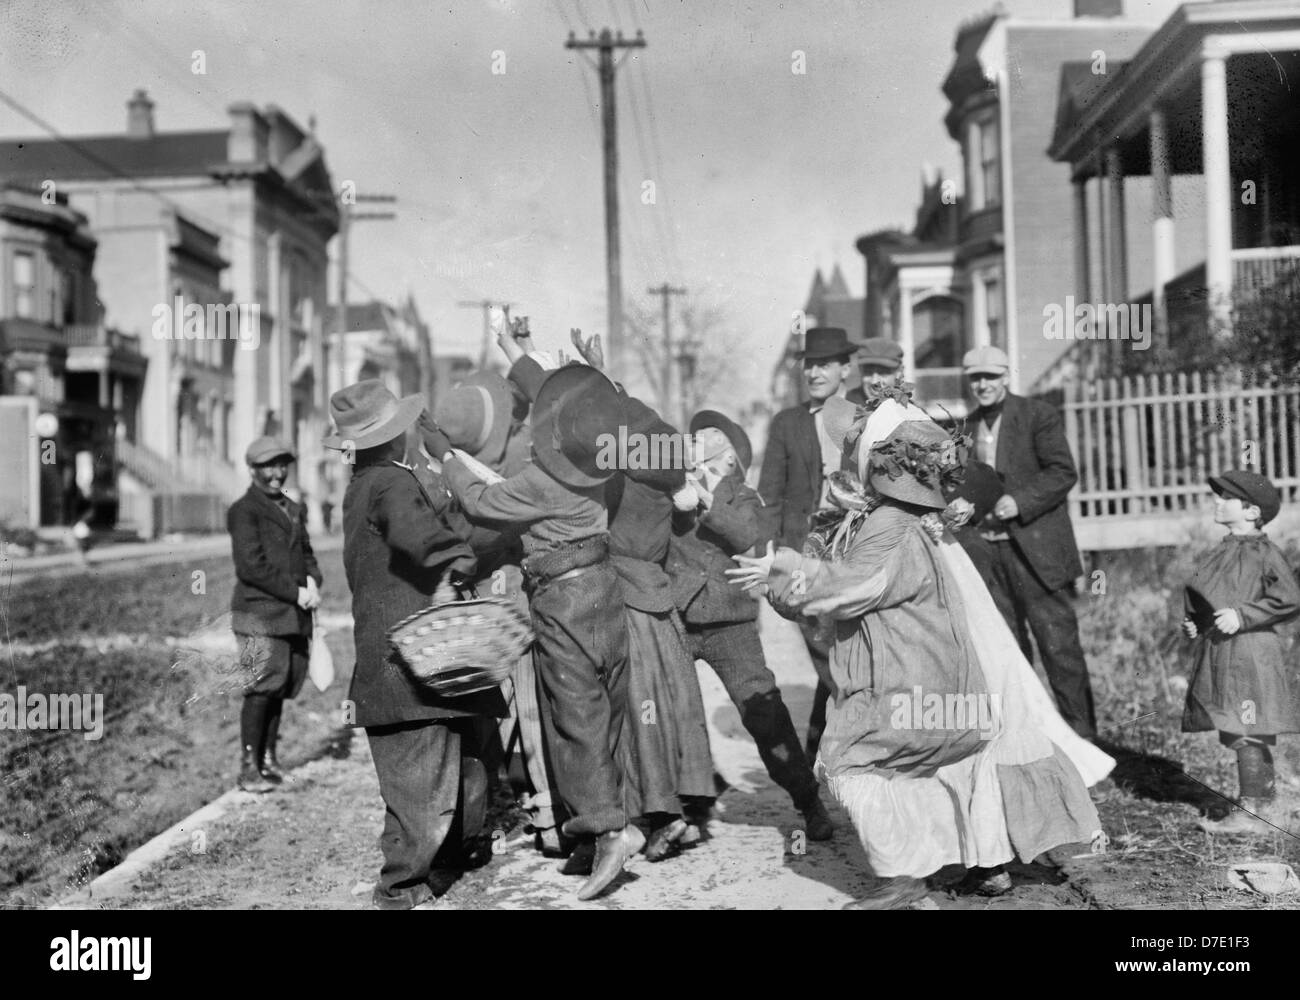 Les carnavaliers de grâce - une vieille tradition de l'action de grâce où les enfants s'habiller comme les vagabonds et rendez-vous autour de la mendicité pour changer, vers 1910 Banque D'Images